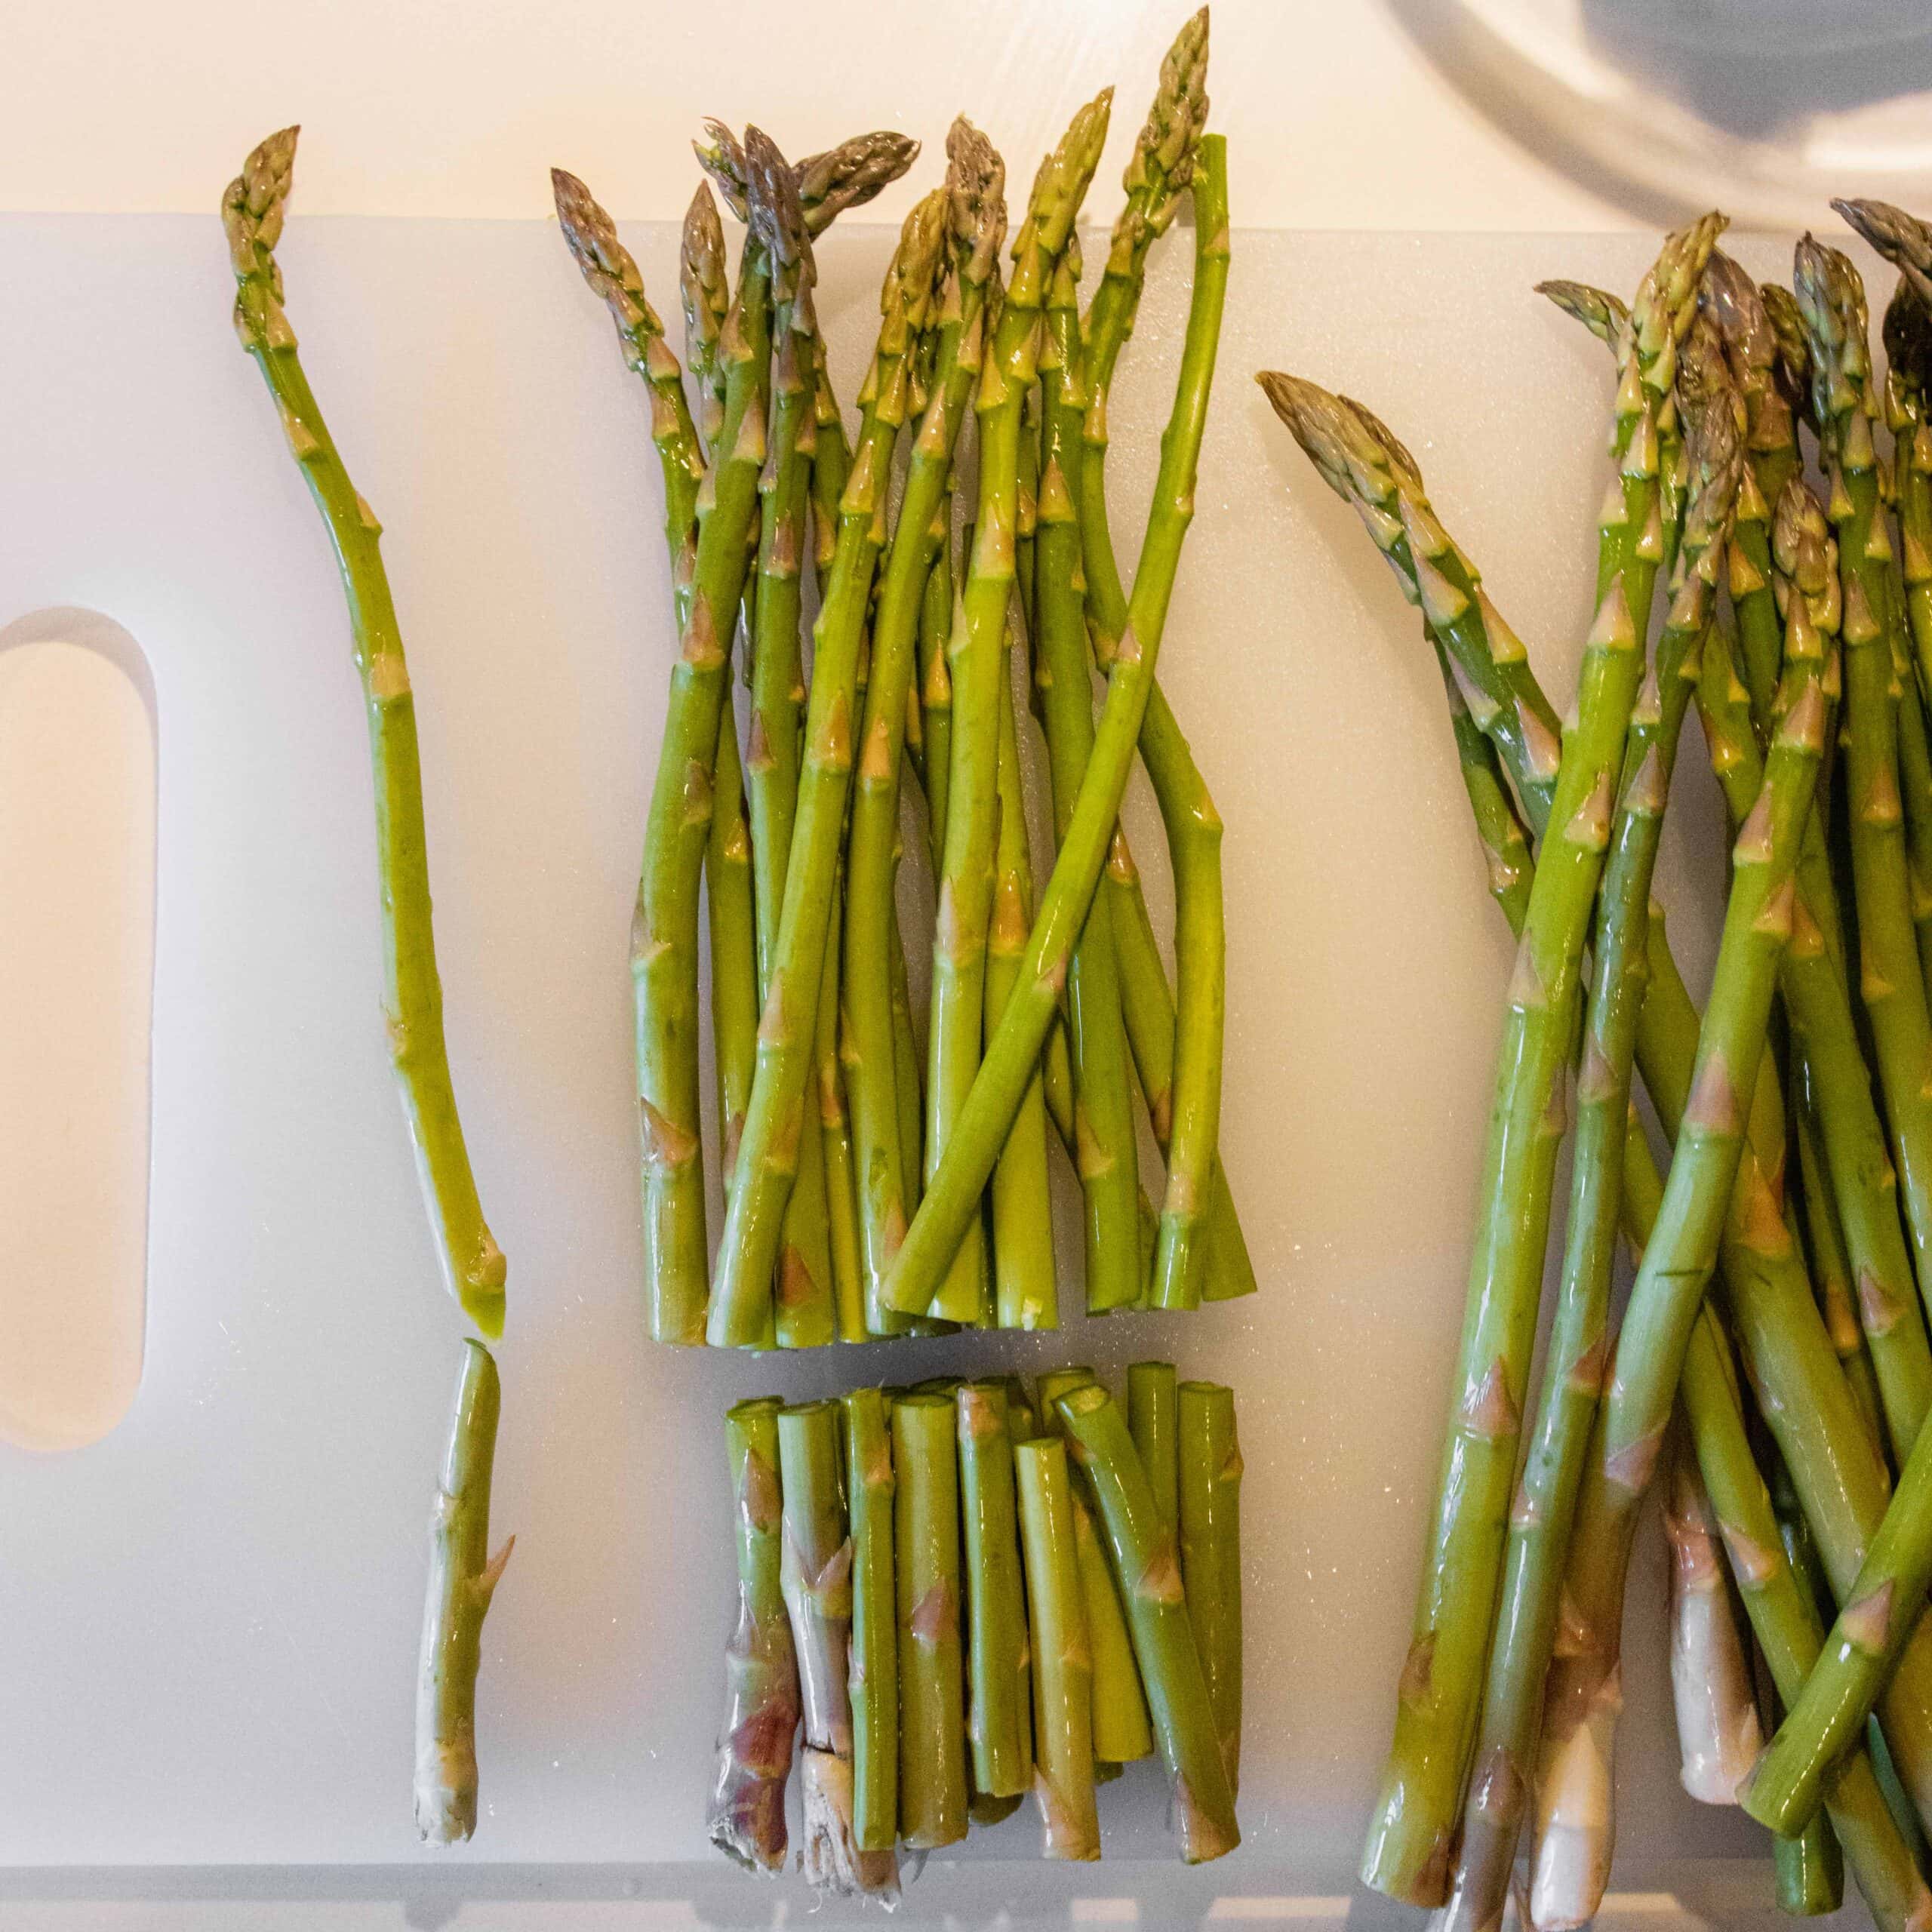 Cut asparagus